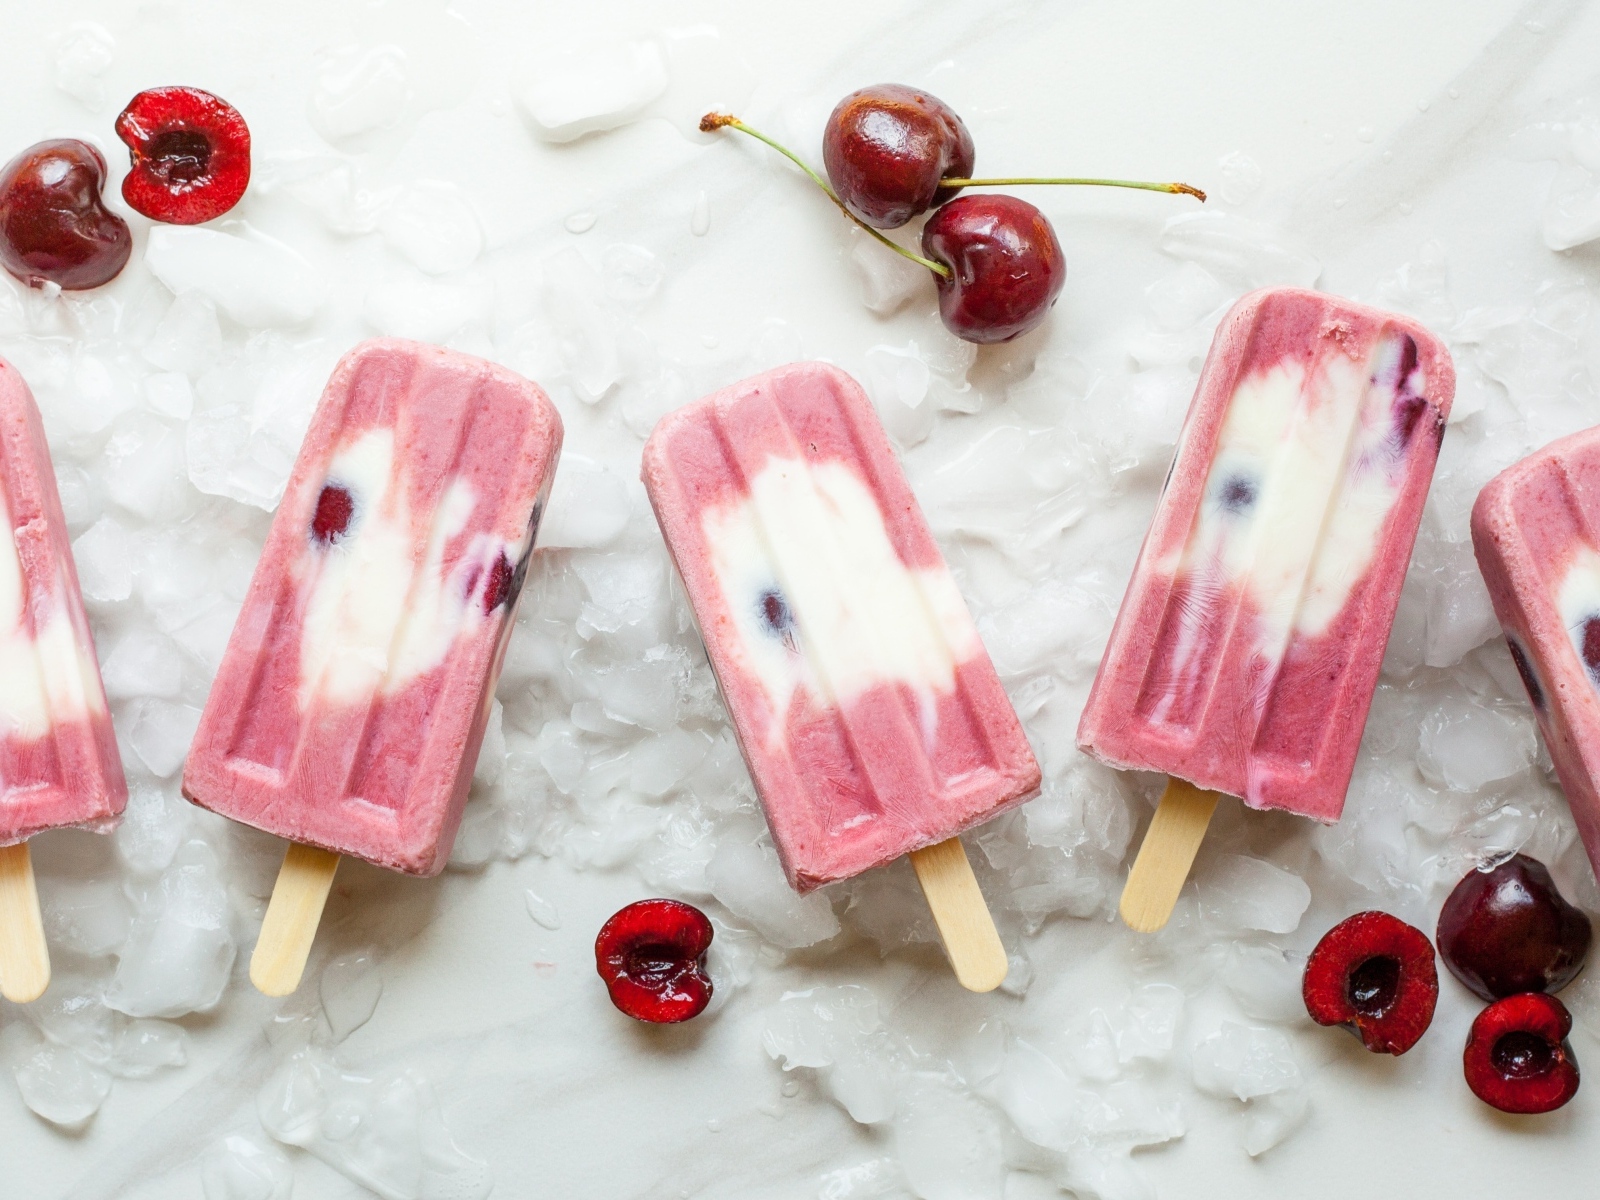 Вкусное мороженое на палочке с ягодами черешни